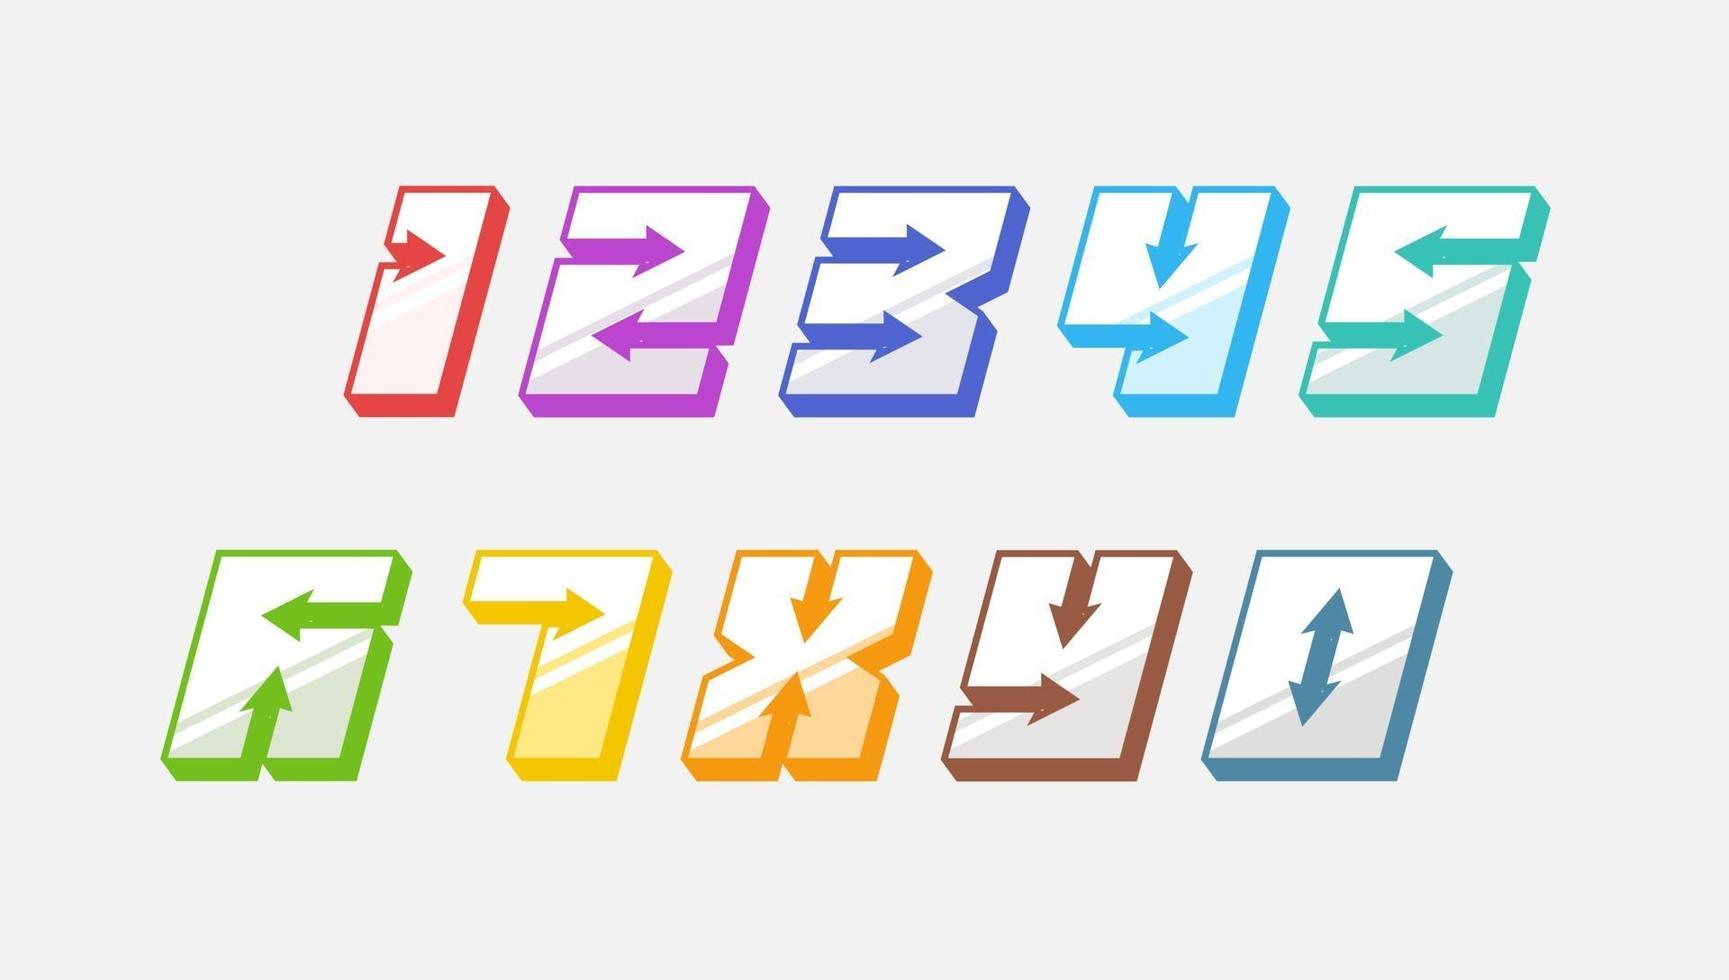 siffror färgglada set i 3d kursiv vintage stil med pilar i snabb srtyle trendig typografi bestående av 1 2 3 4 5 6 7 8 9 0 för affisch design eller gratulationskort. vektor modern teckensnitt eps 10